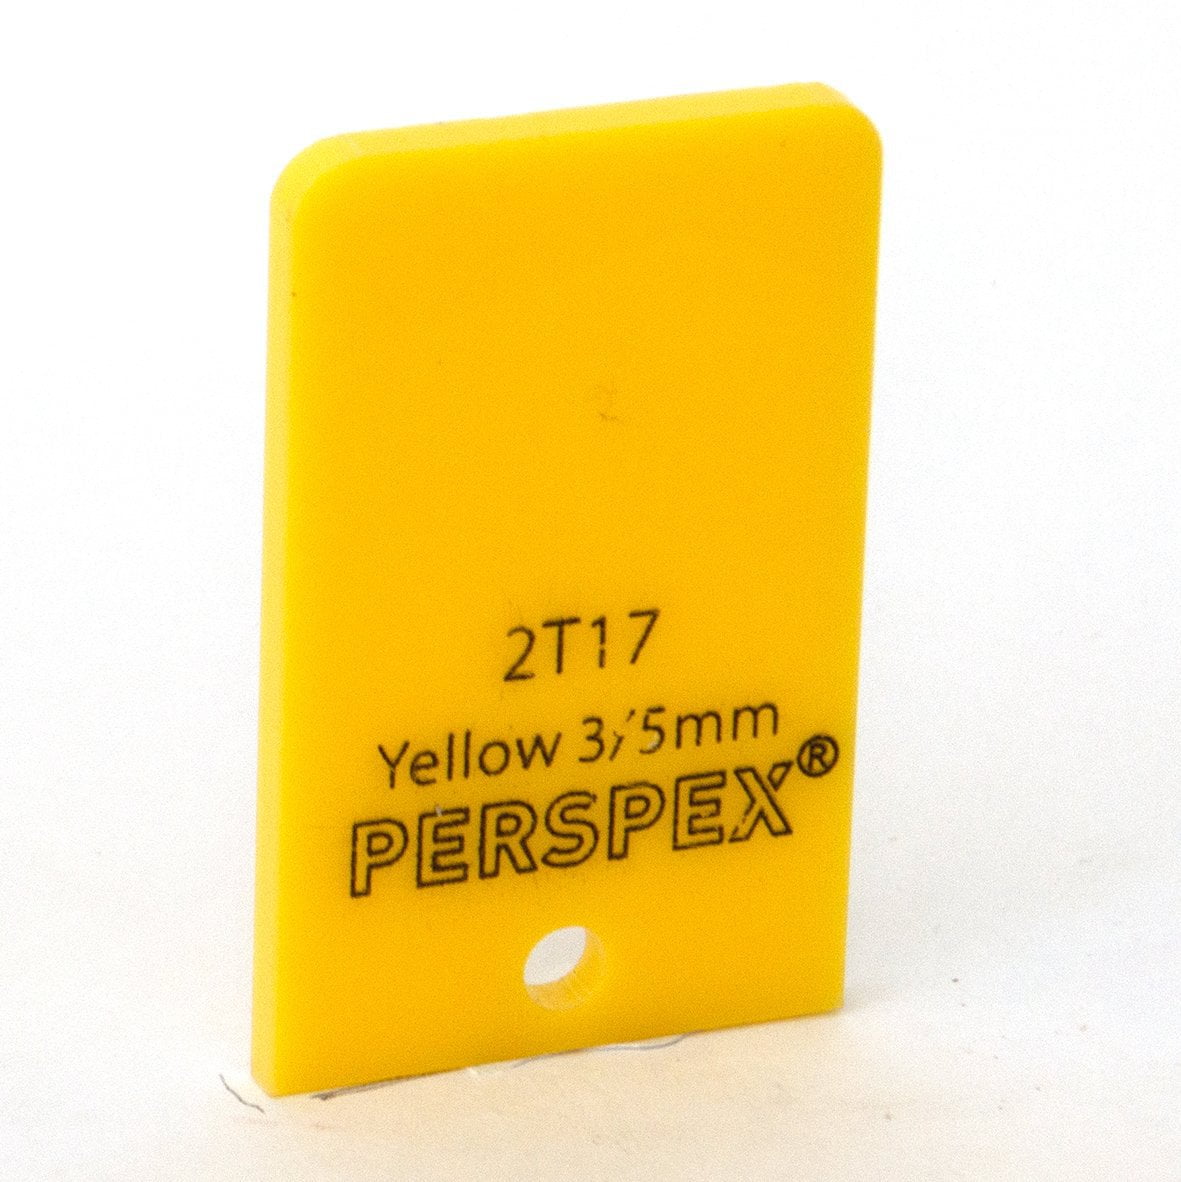 3mm Standard Bright Yellow 2T17, 1000x600mm